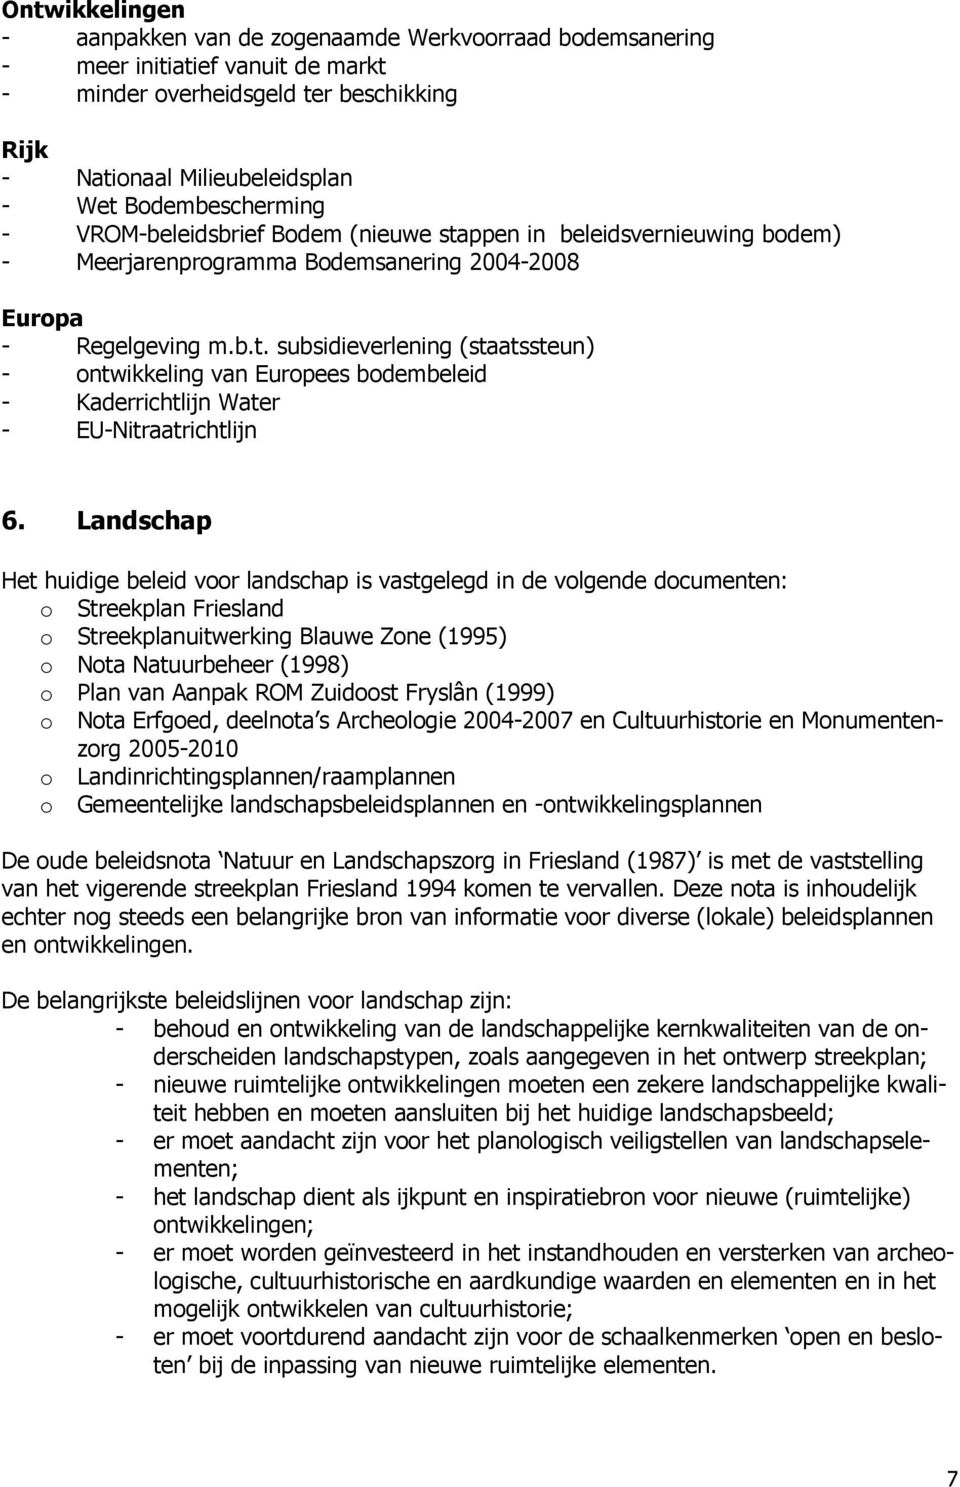 6. Landschap Het huidige beleid voor landschap is vastgelegd in de volgende documenten: o Streekplan Friesland o Streekplanuitwerking Blauwe Zone (1995) o Nota Natuurbeheer (1998) o Plan van Aanpak